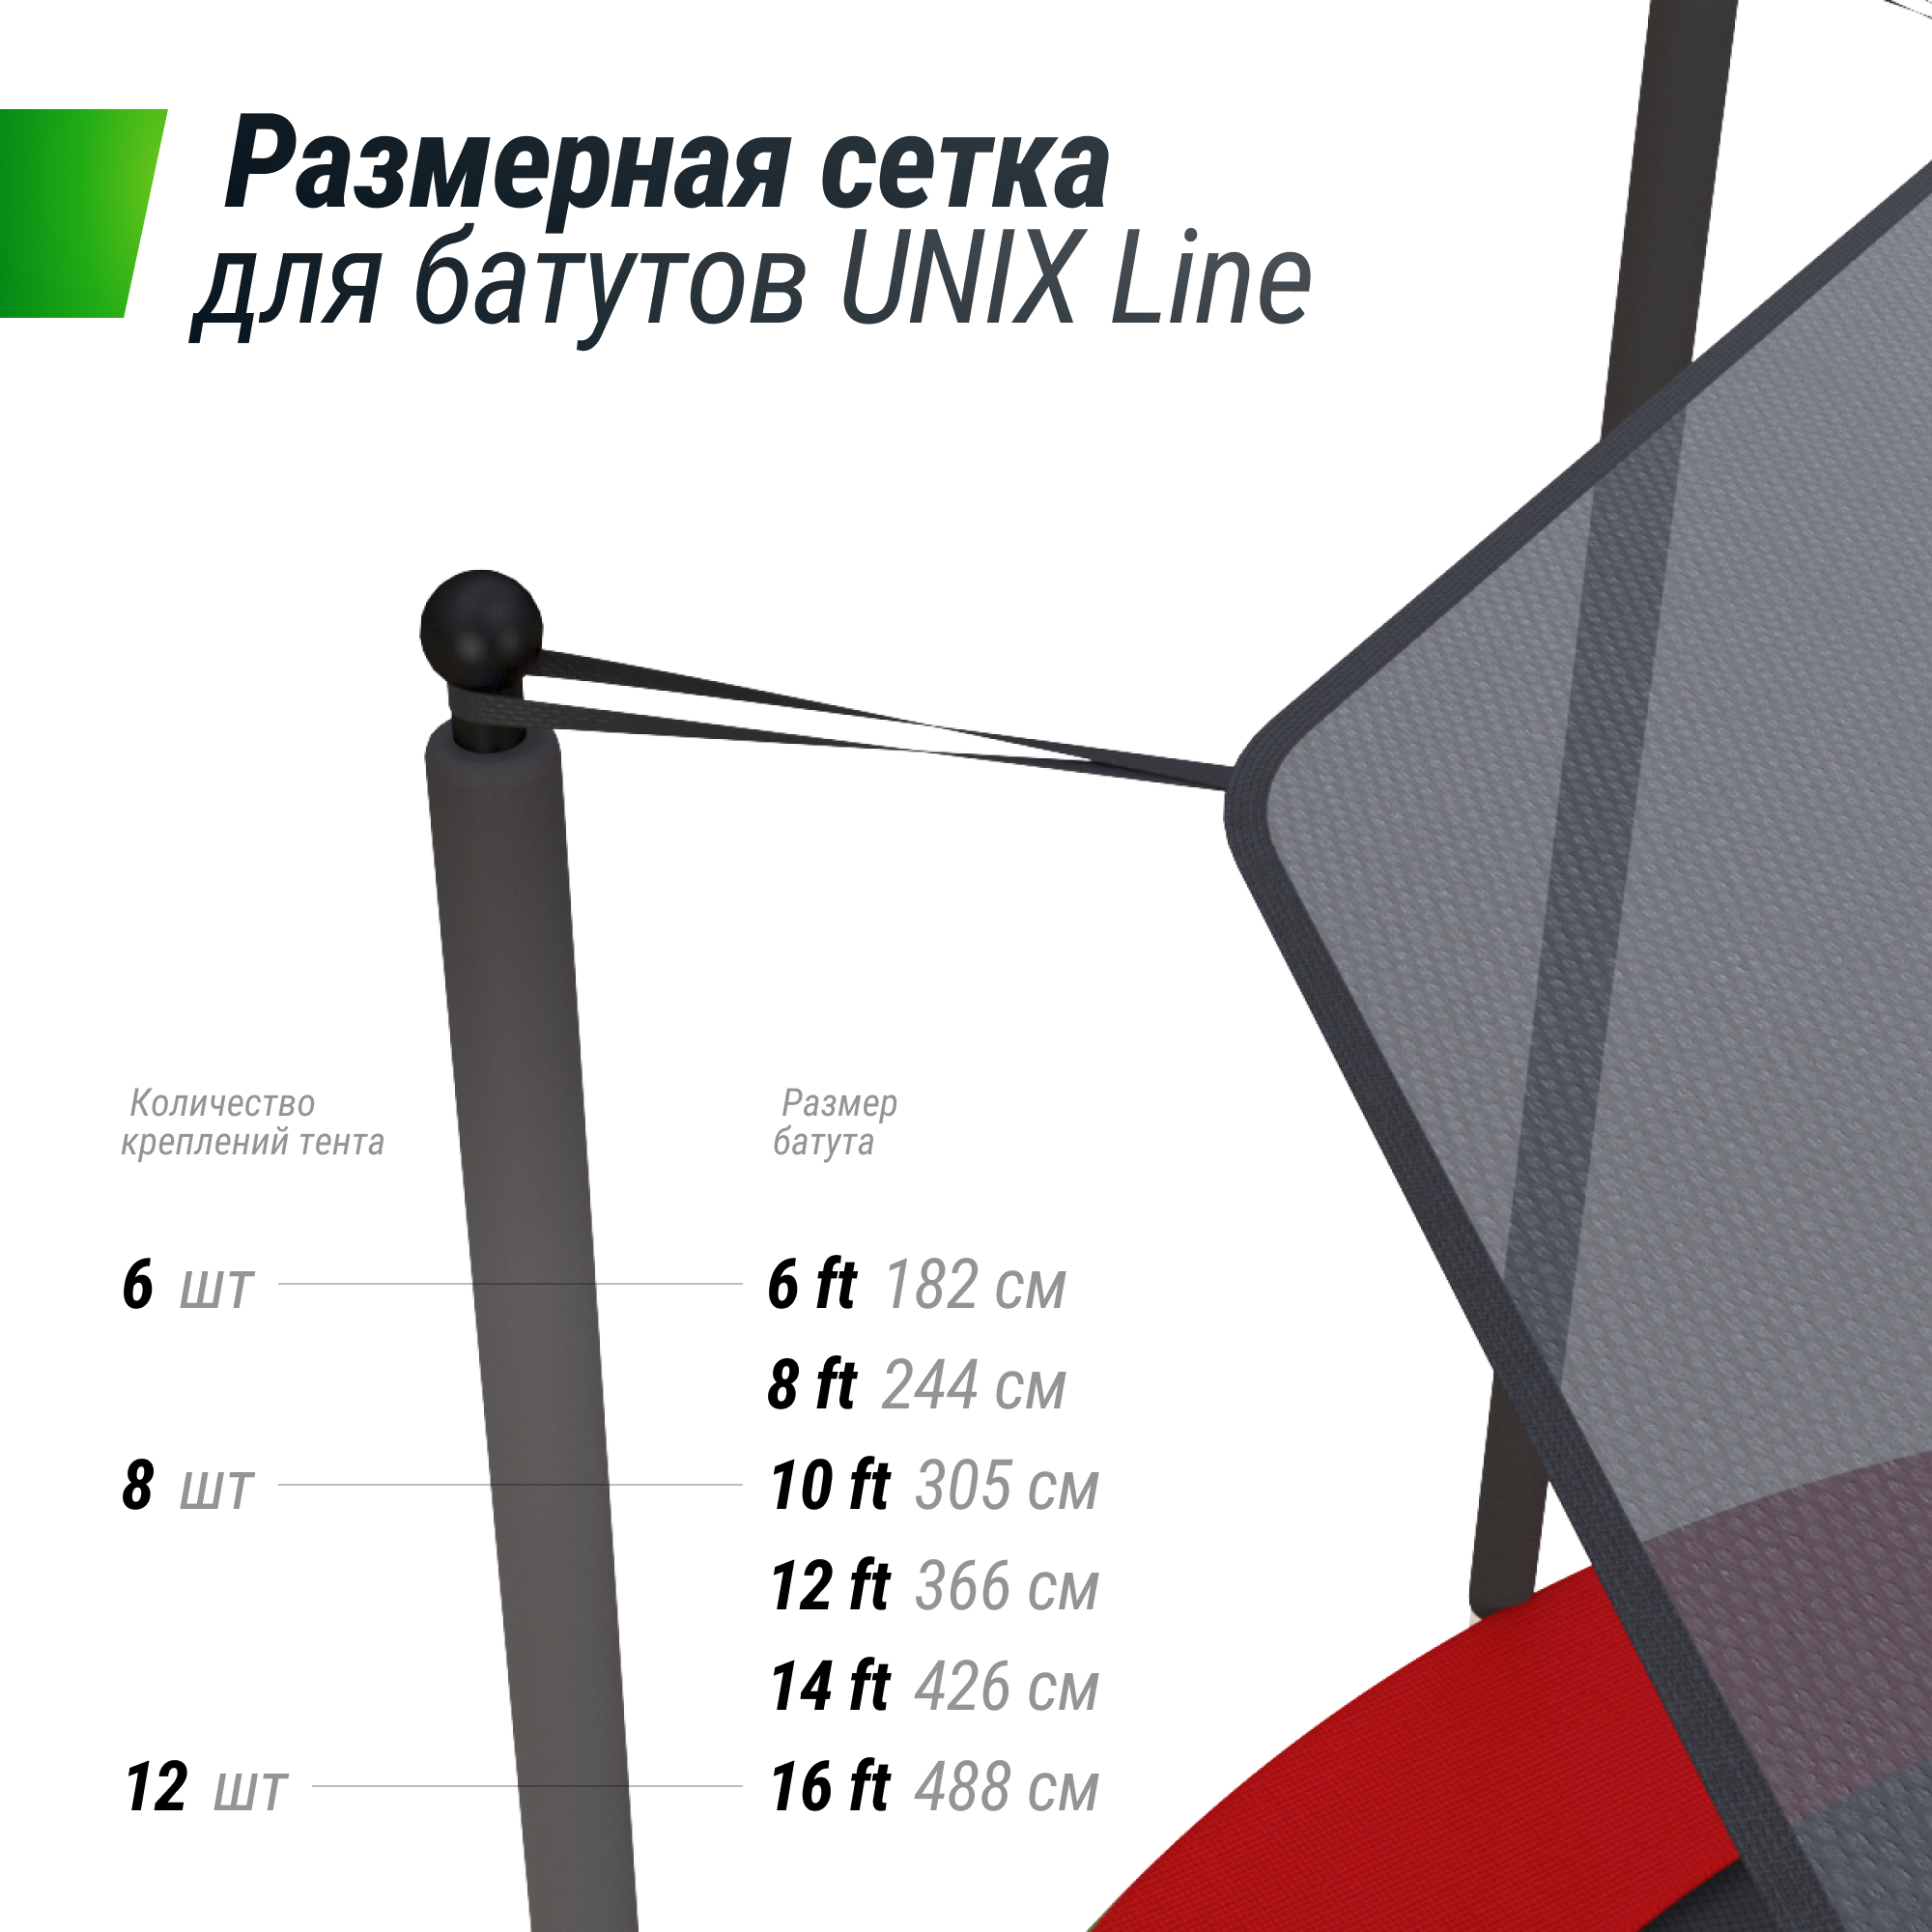 Солнцезащитный тент UNIX Line 366 см (12 ft)